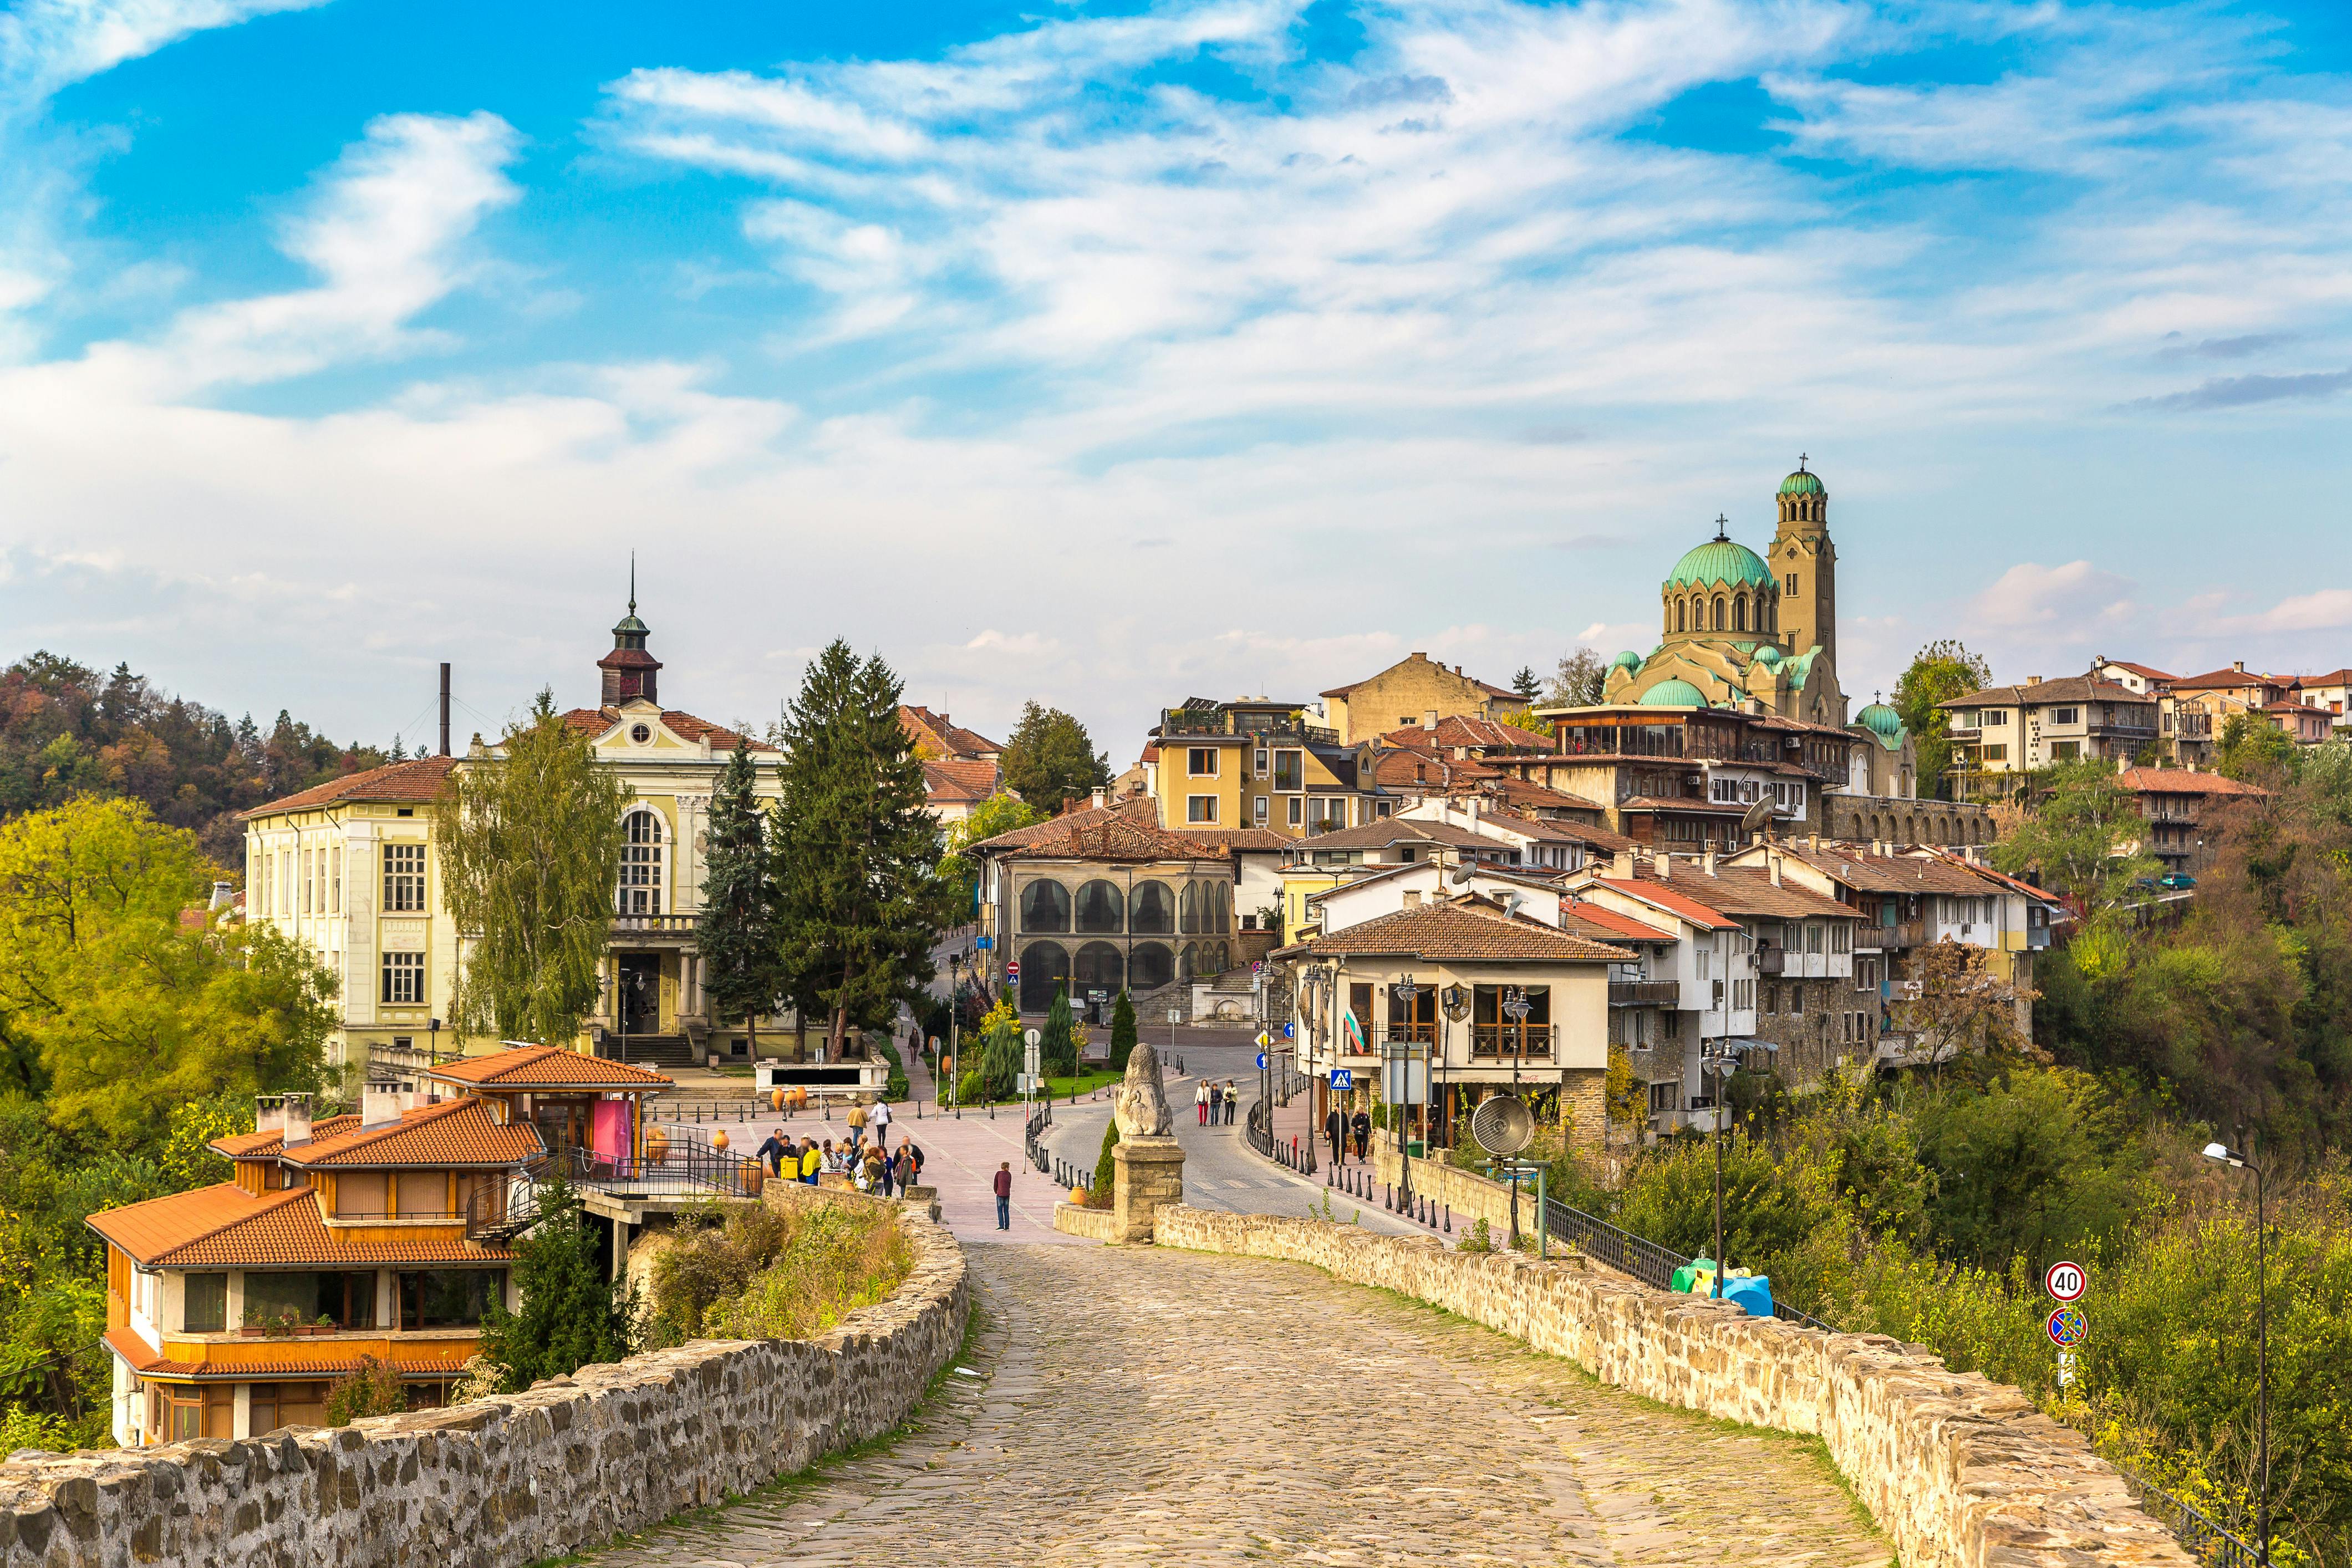 Full-day tour of  Veliko Tarnovo and Arbanasi Bulgaria from Bucharest